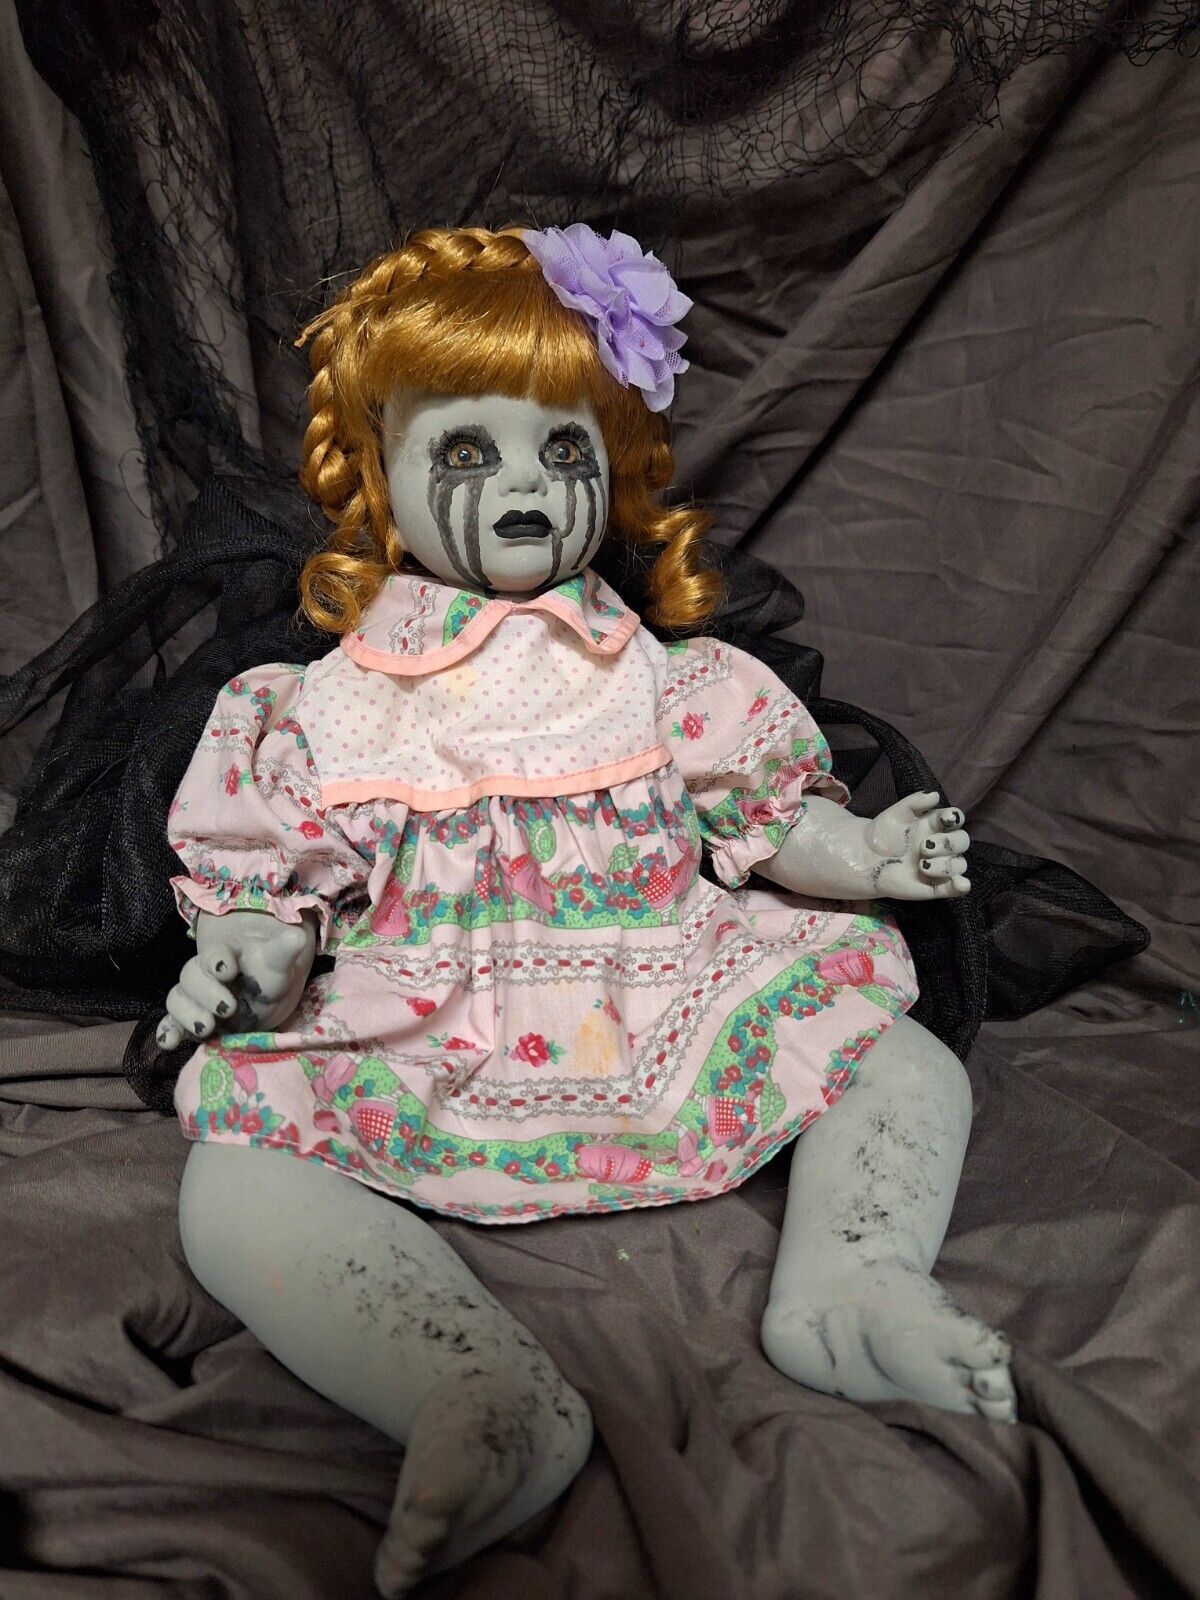 OOAK Creepy Doll, Handmade, 16 In Tall, Halloween Prop